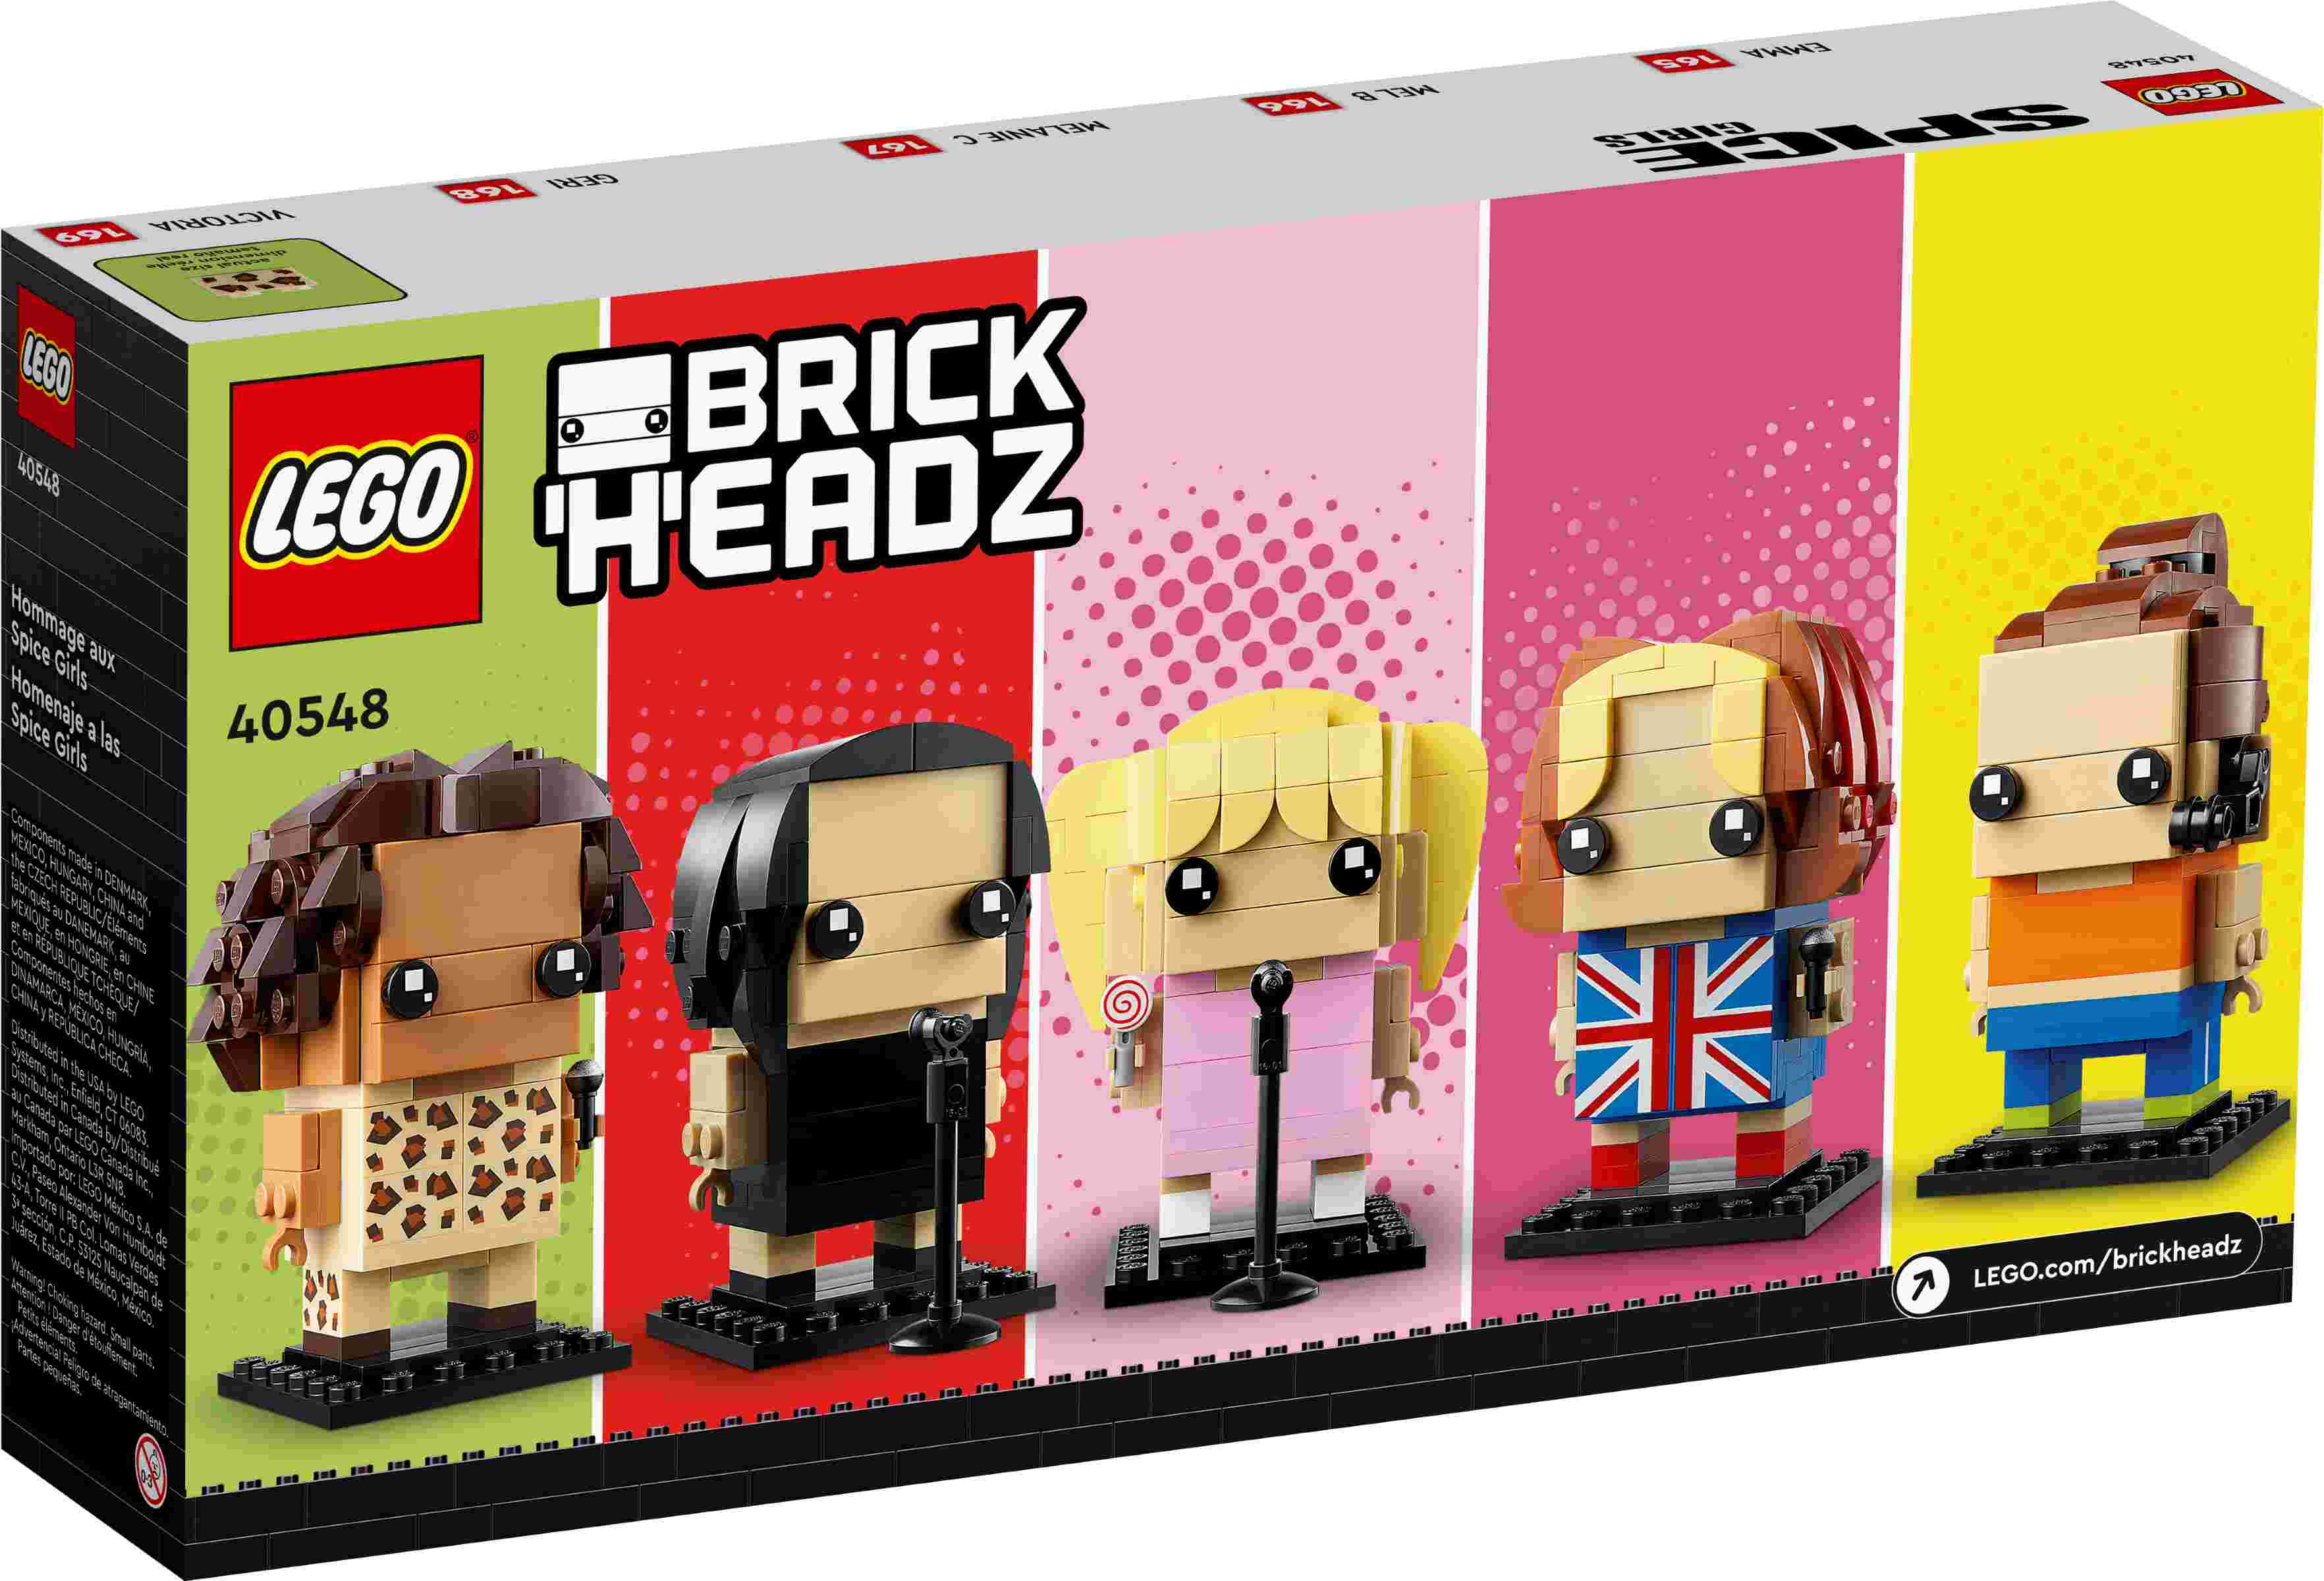 LEGO 40548 BrickHeadz Hommage an die Spice Girls, Grundplatten zum Aufstellen